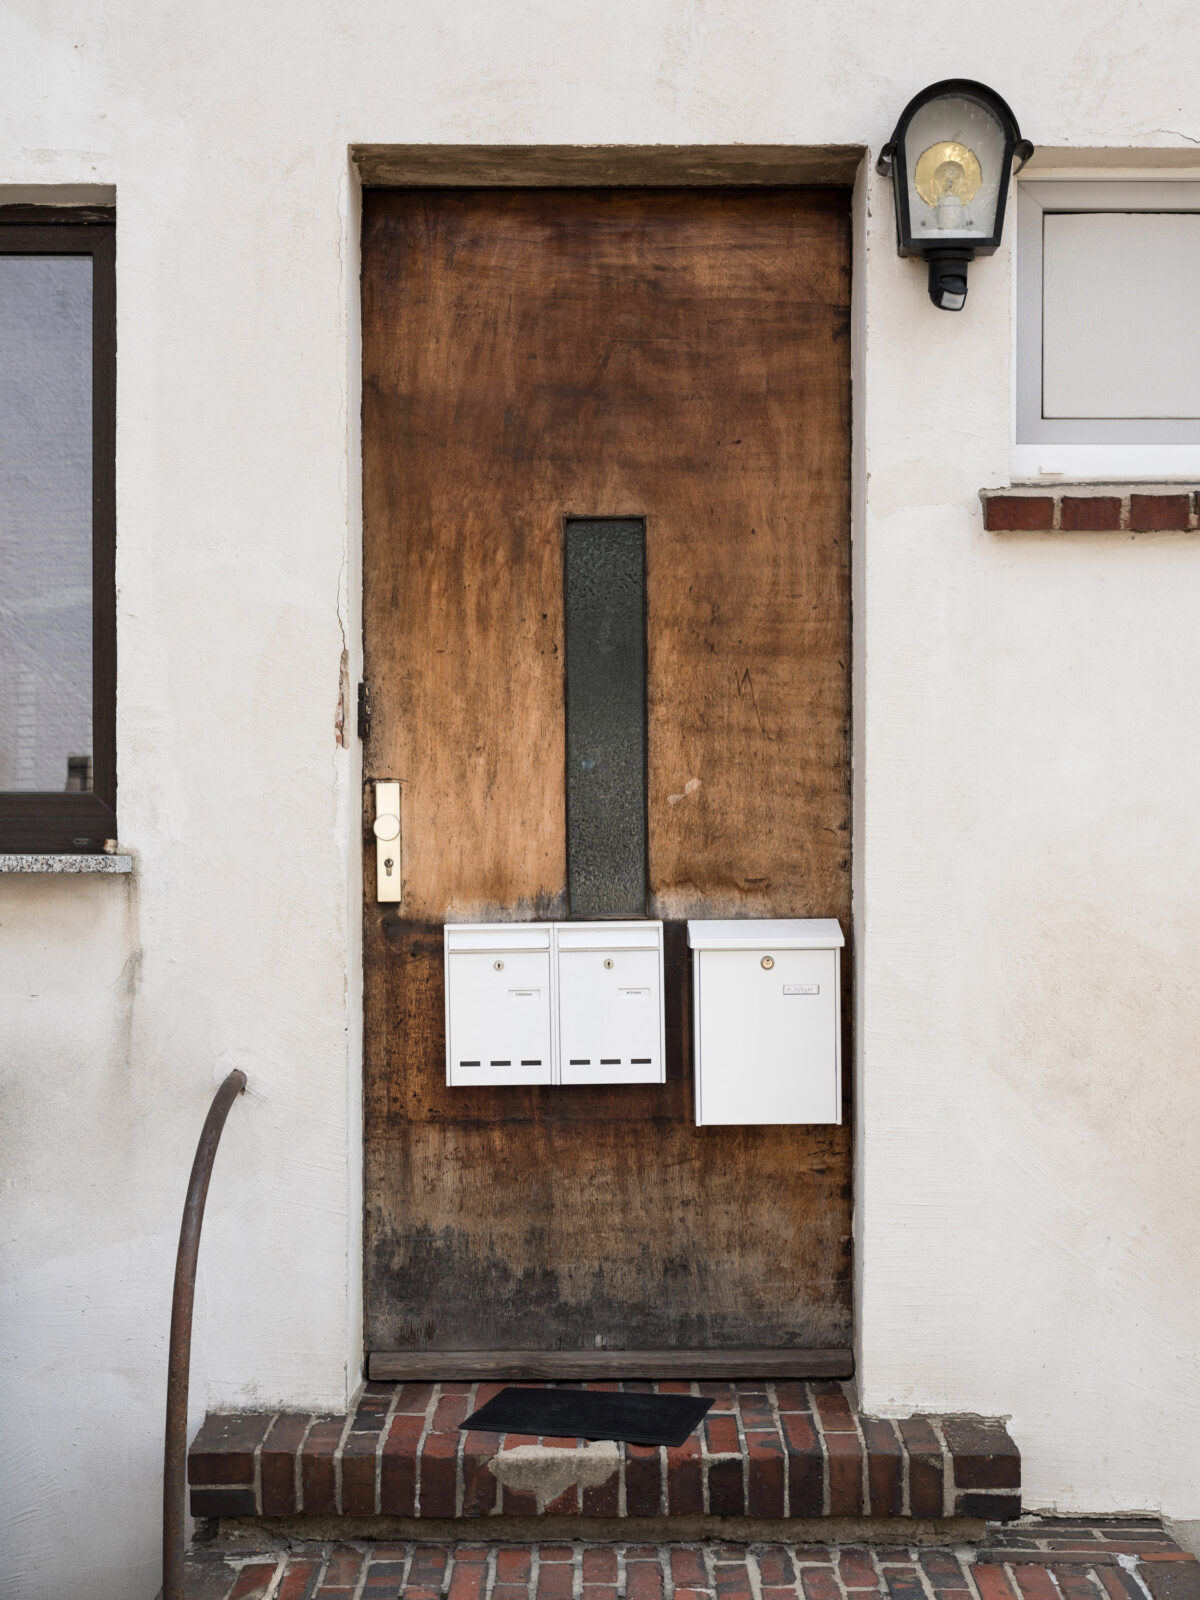 Hölzerne Eingangstür mit drei Briefkästen – davor zwei Stufen aus Klinkersteinen und gebogenem rundem Handlauf.